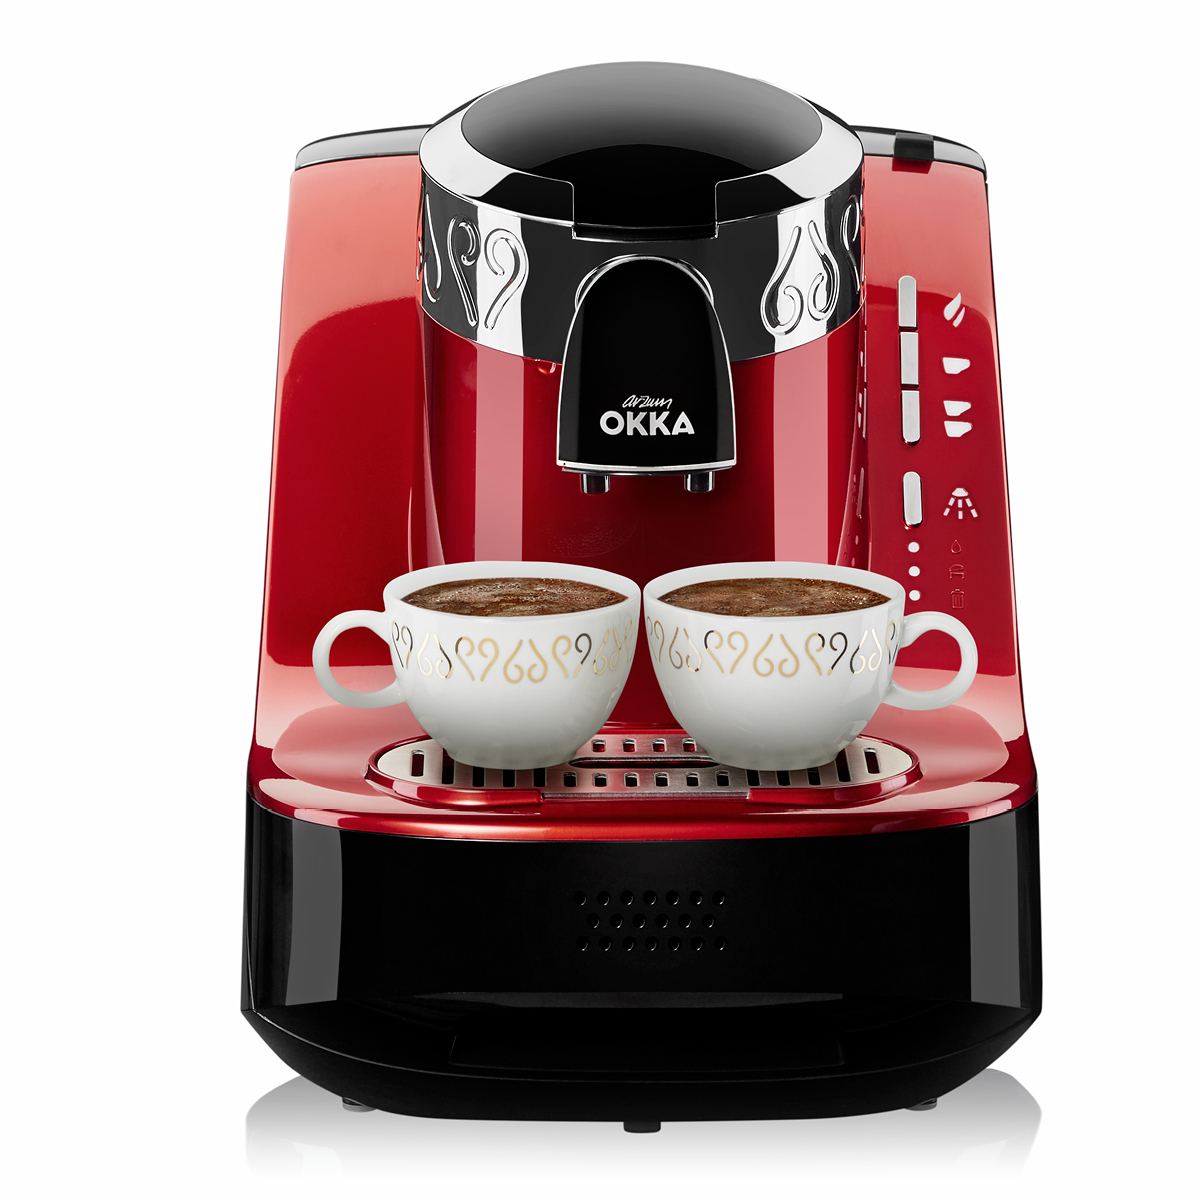 ارزوم اوكا ماكينة تحضير القهوة التركية , احمر, OK002-N 